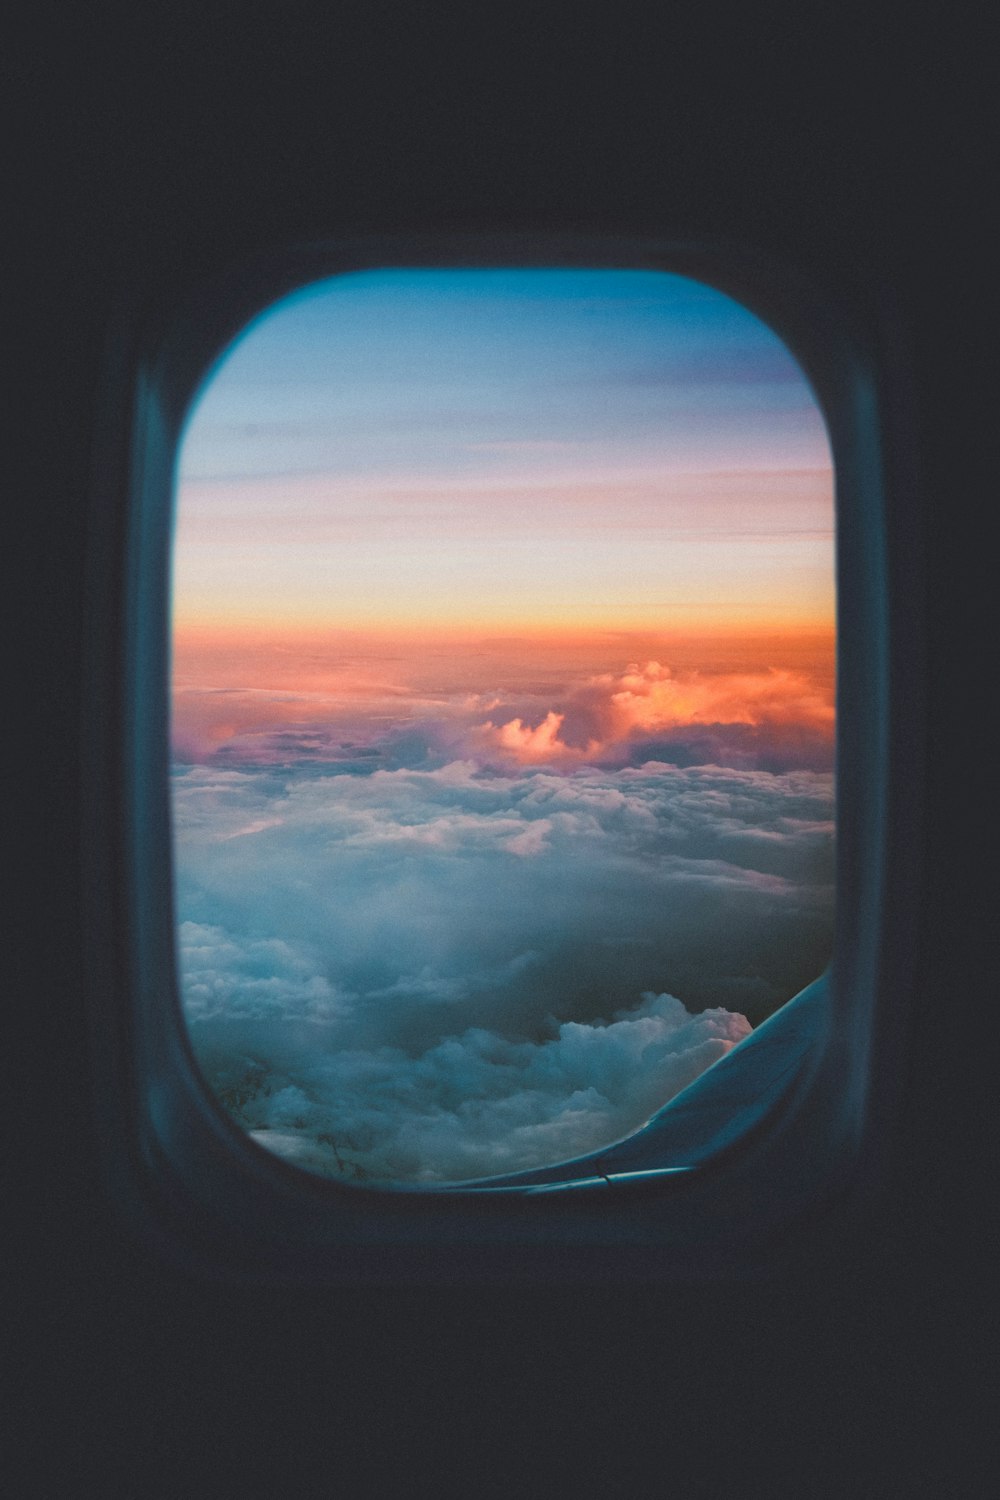 Fenêtre d’avion donnant sur la mer de nuages